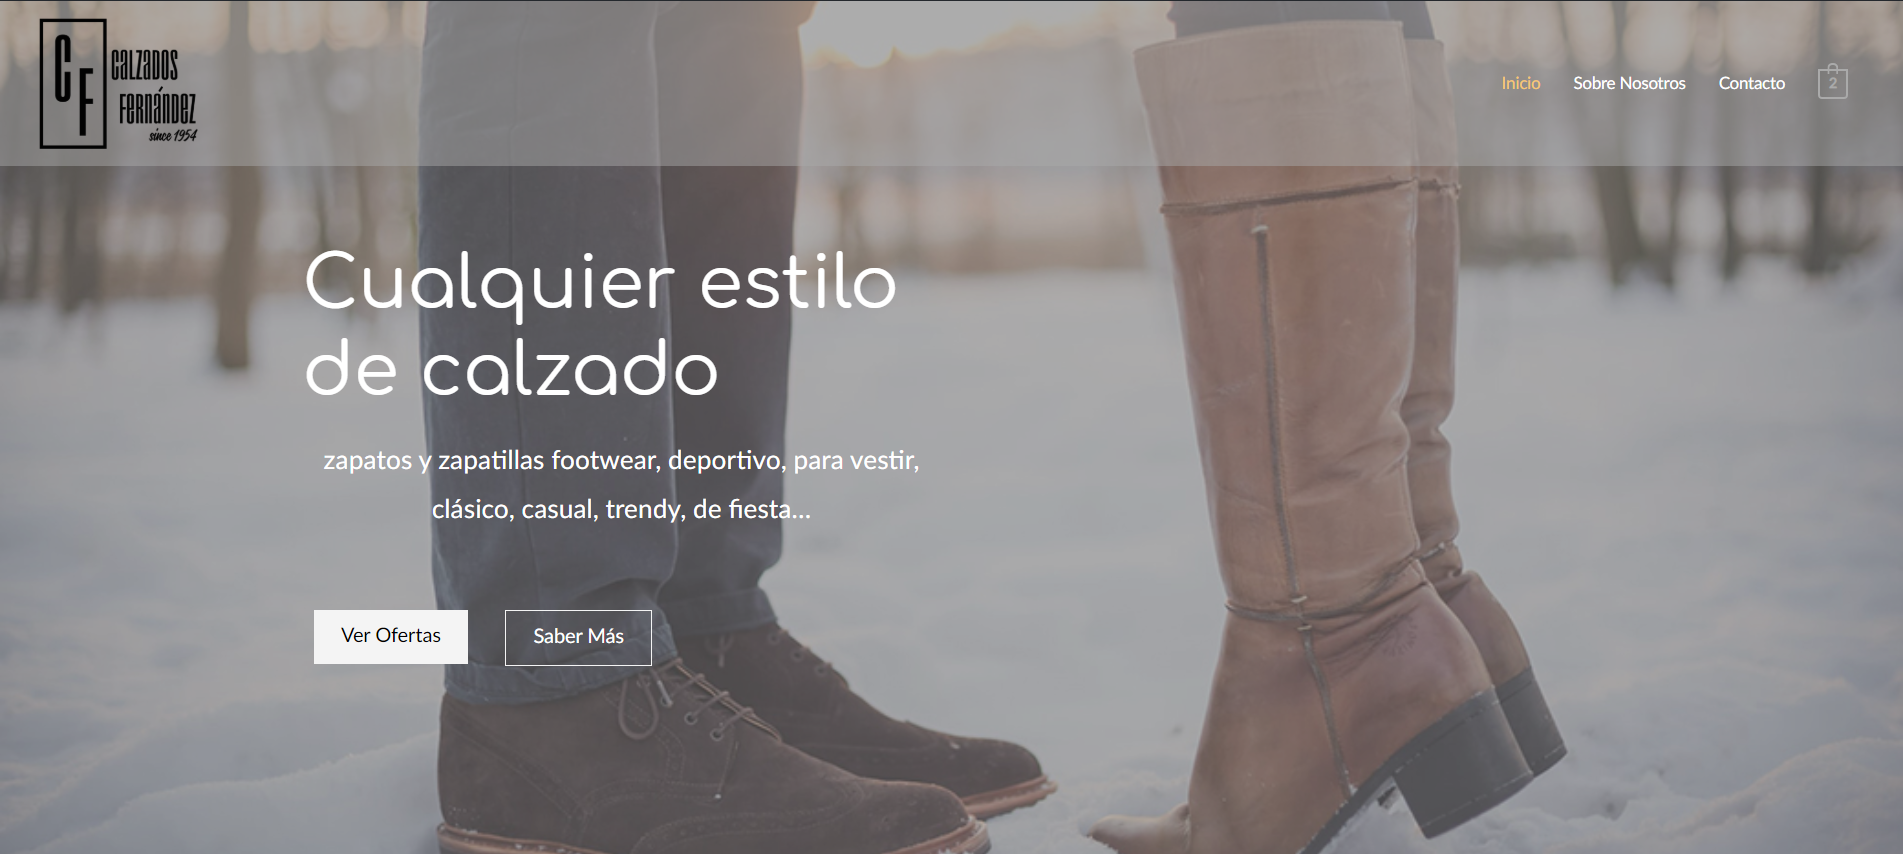 Ejemplo de Web para una tienda de calzado